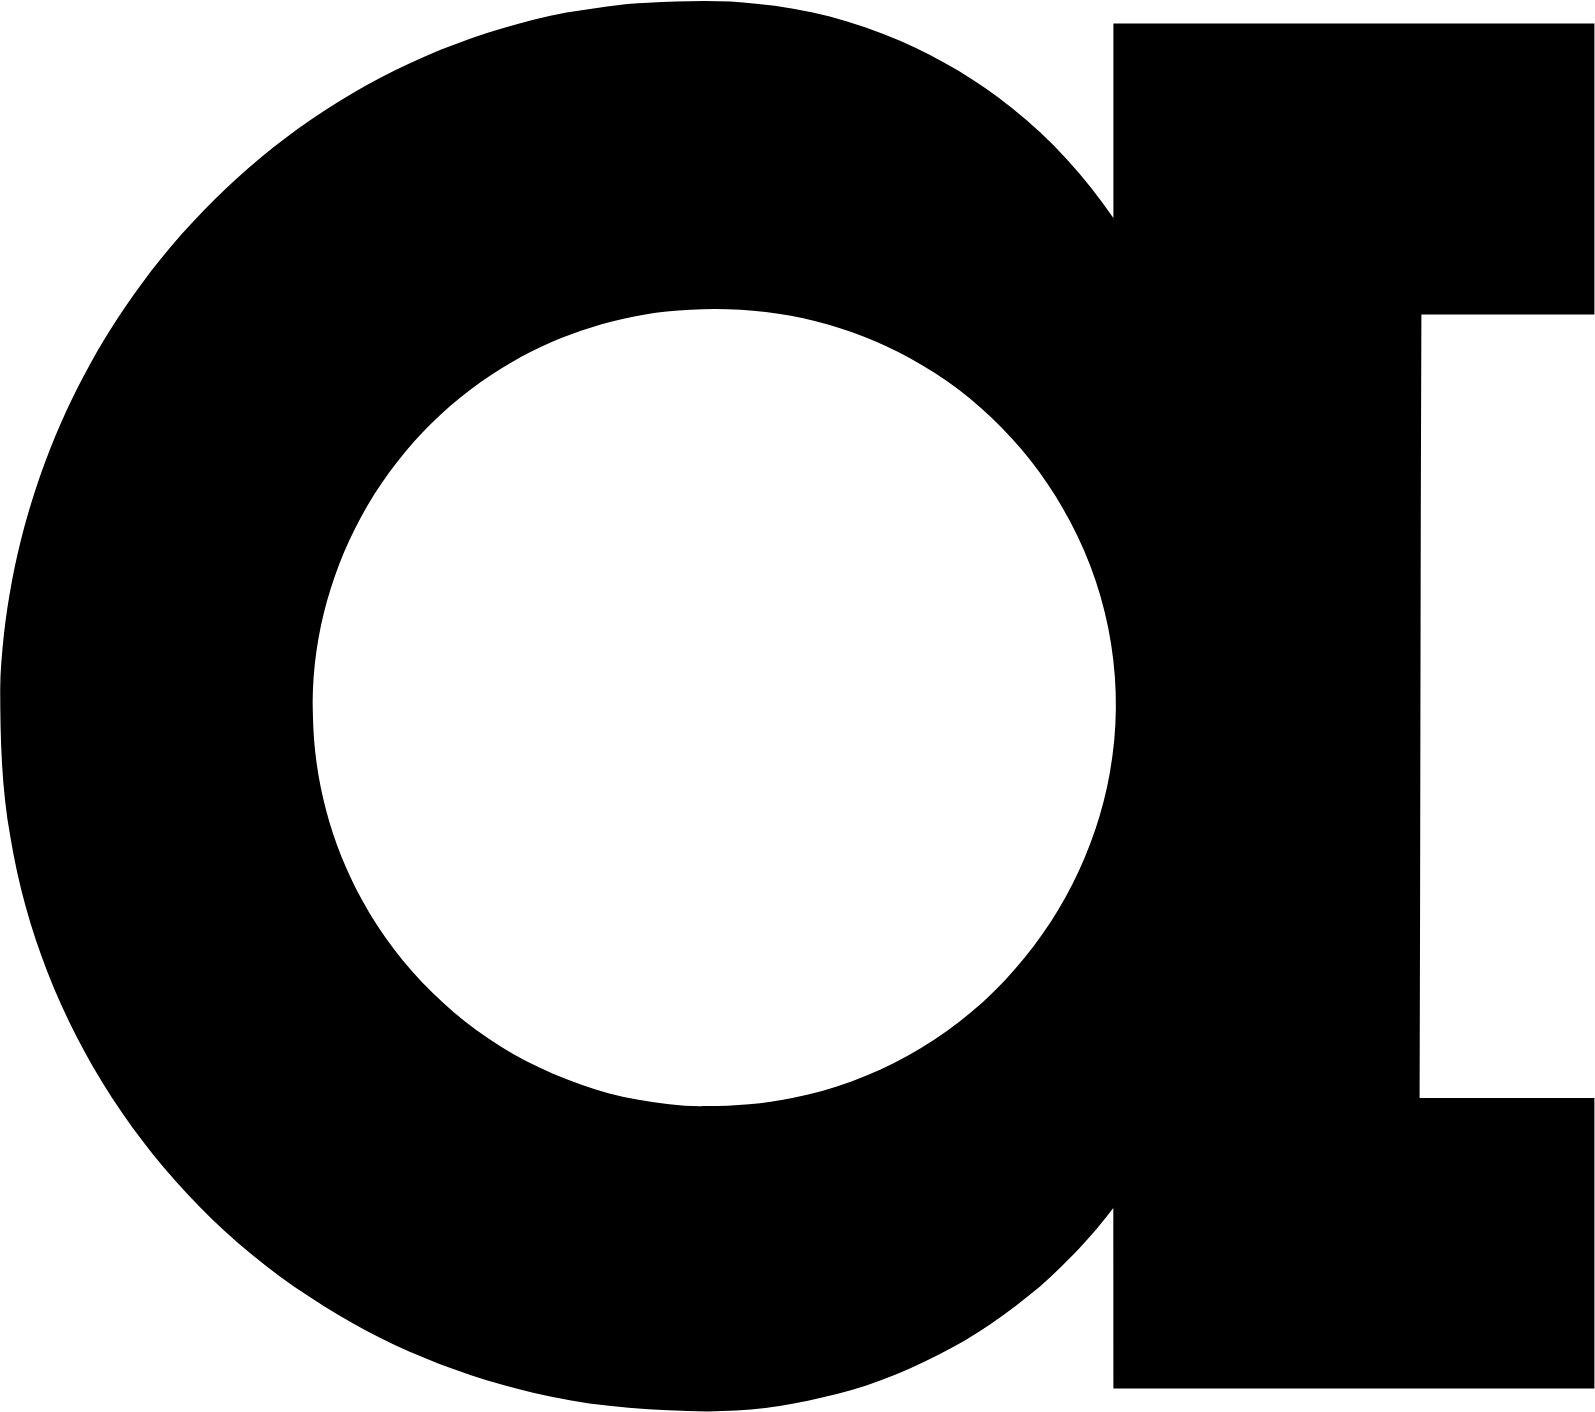 Abcam logo (PNG transparent)